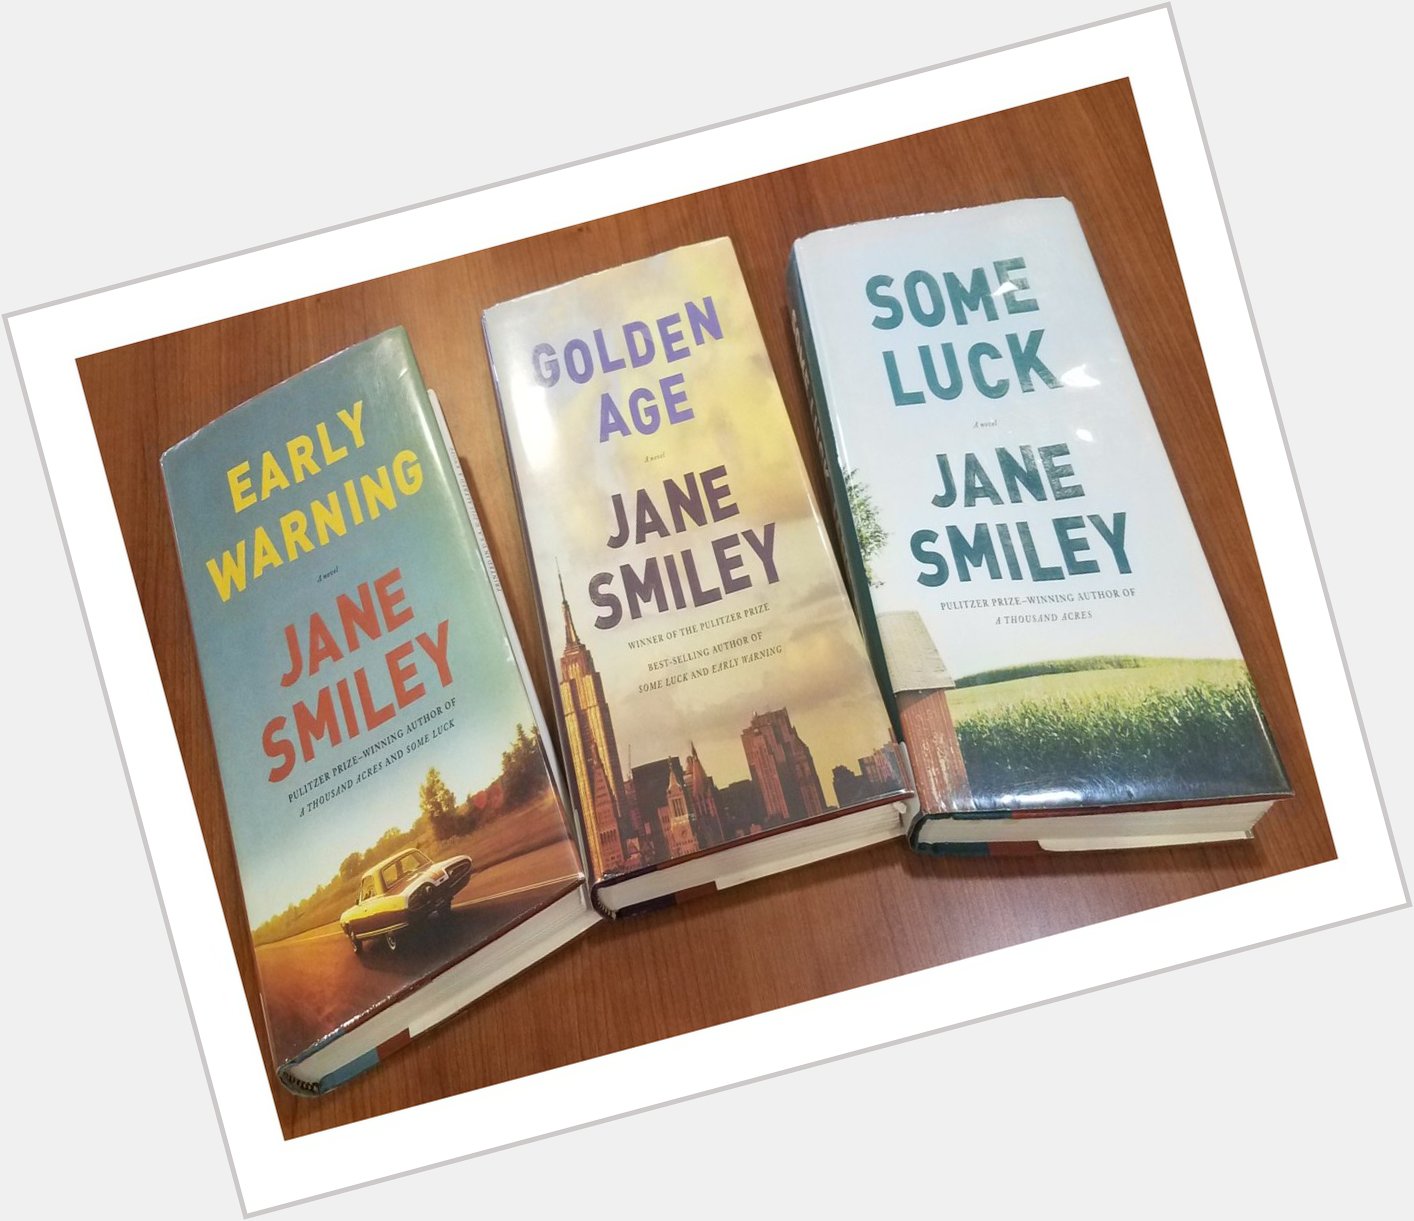 Happy birthday to author Jane Smiley! 